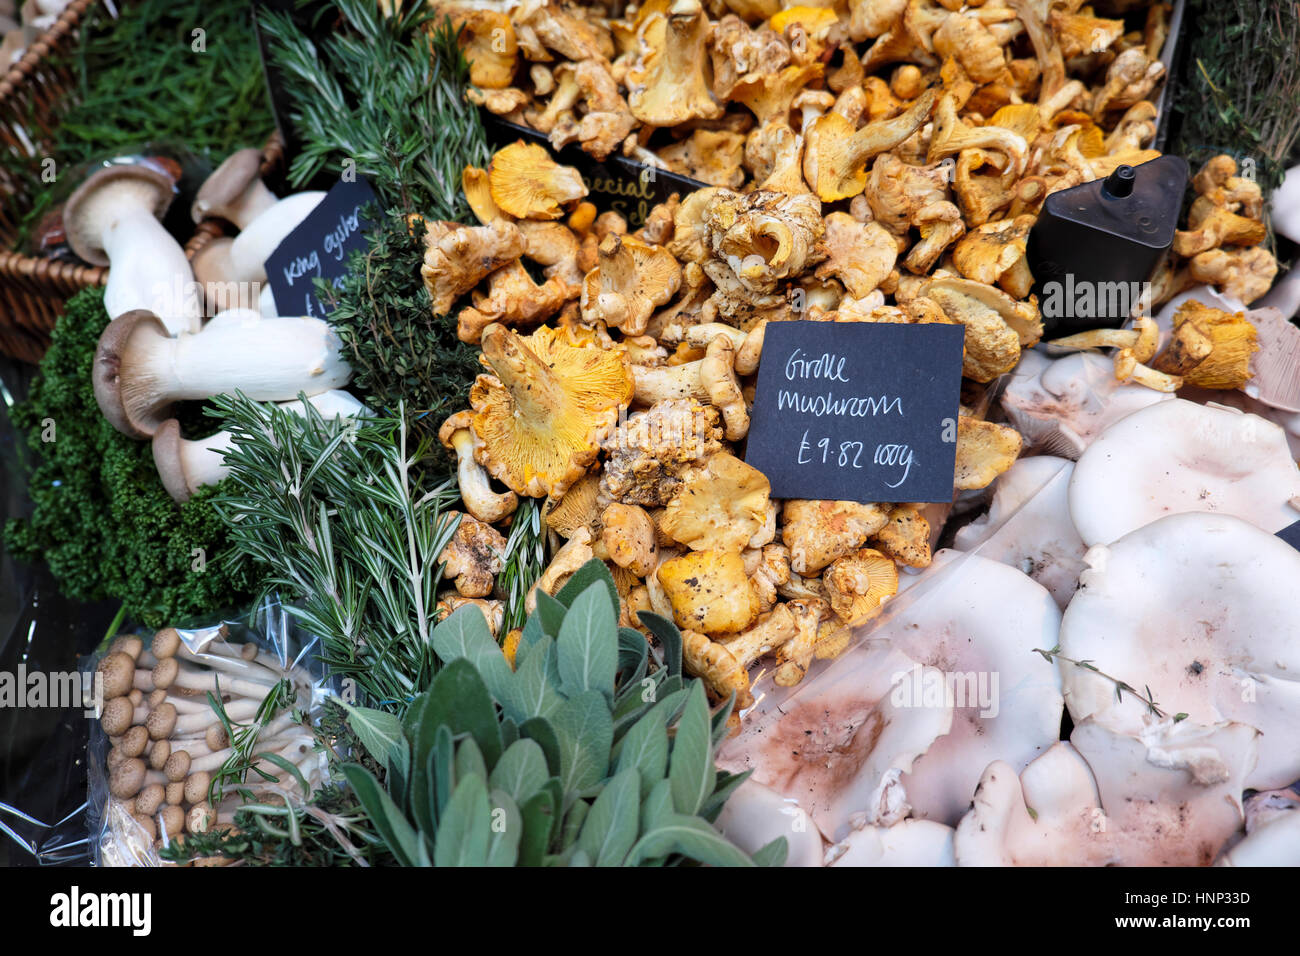 Petits plateaux avec divers champignons chanterelle girolle et sur l'affichage sur le stand à Borough Market à Southwark, Londres du sud, UK KATHY DEWITT Banque D'Images